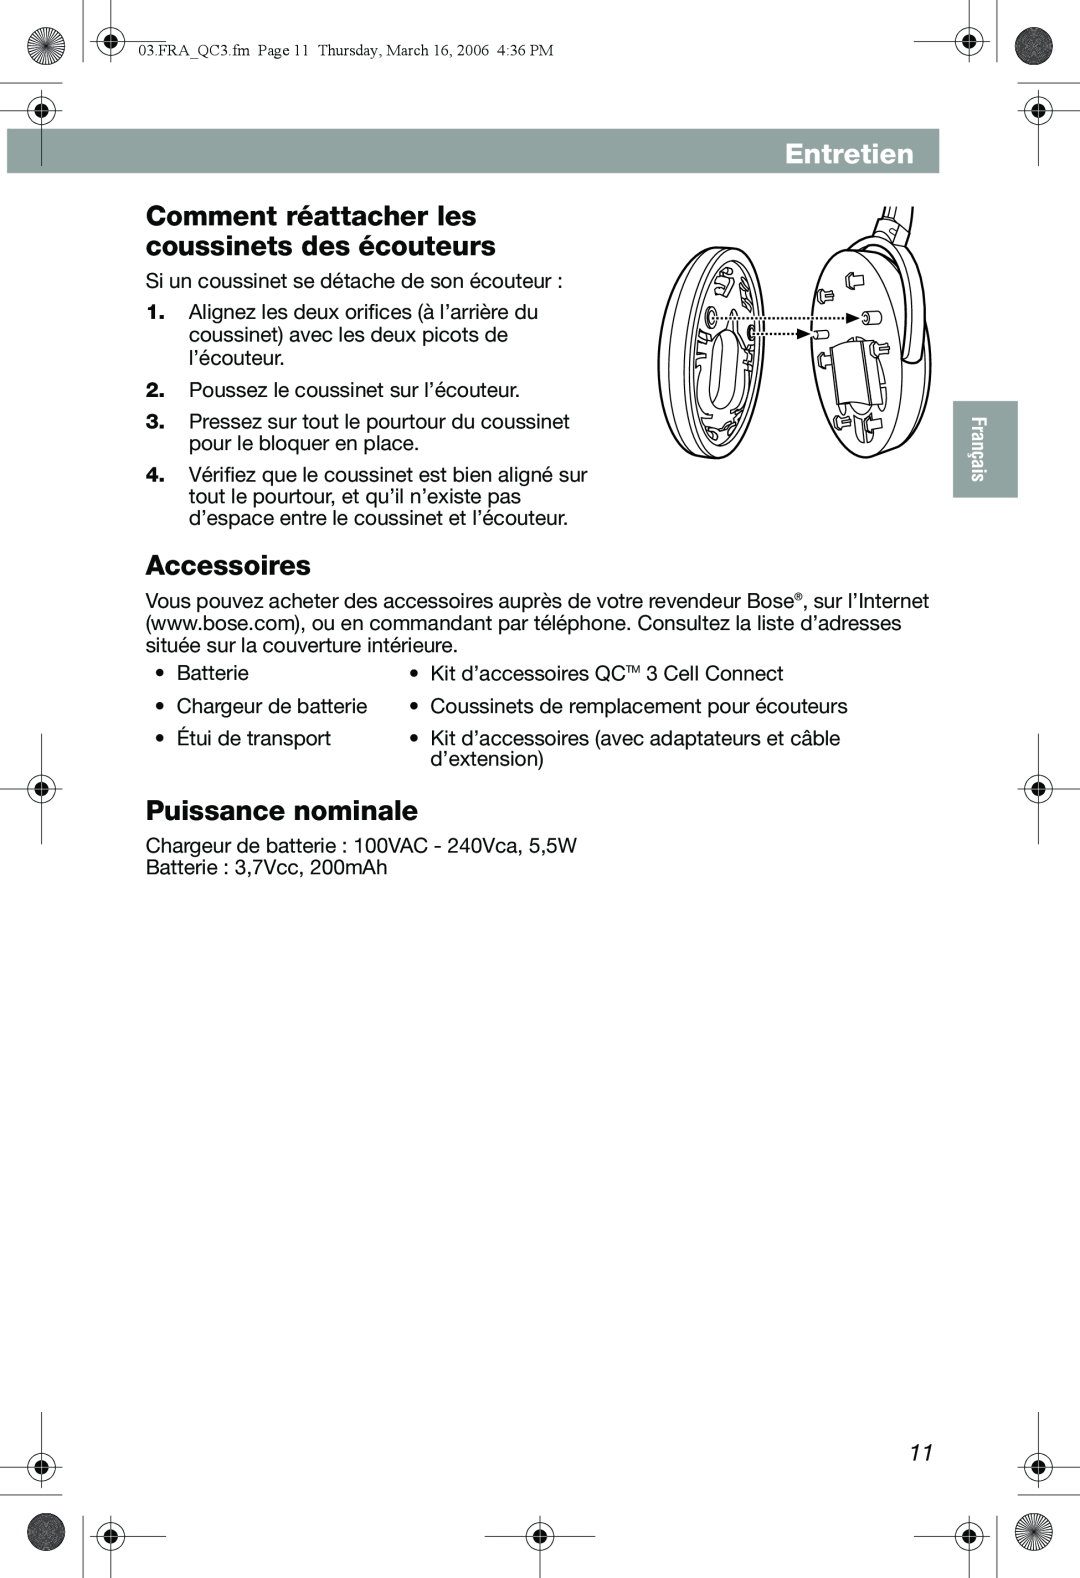 Bose QuietComfort 3 manual Comment réattacher les coussinets des écouteurs, Accessoires, Puissance nominale, Entretien 